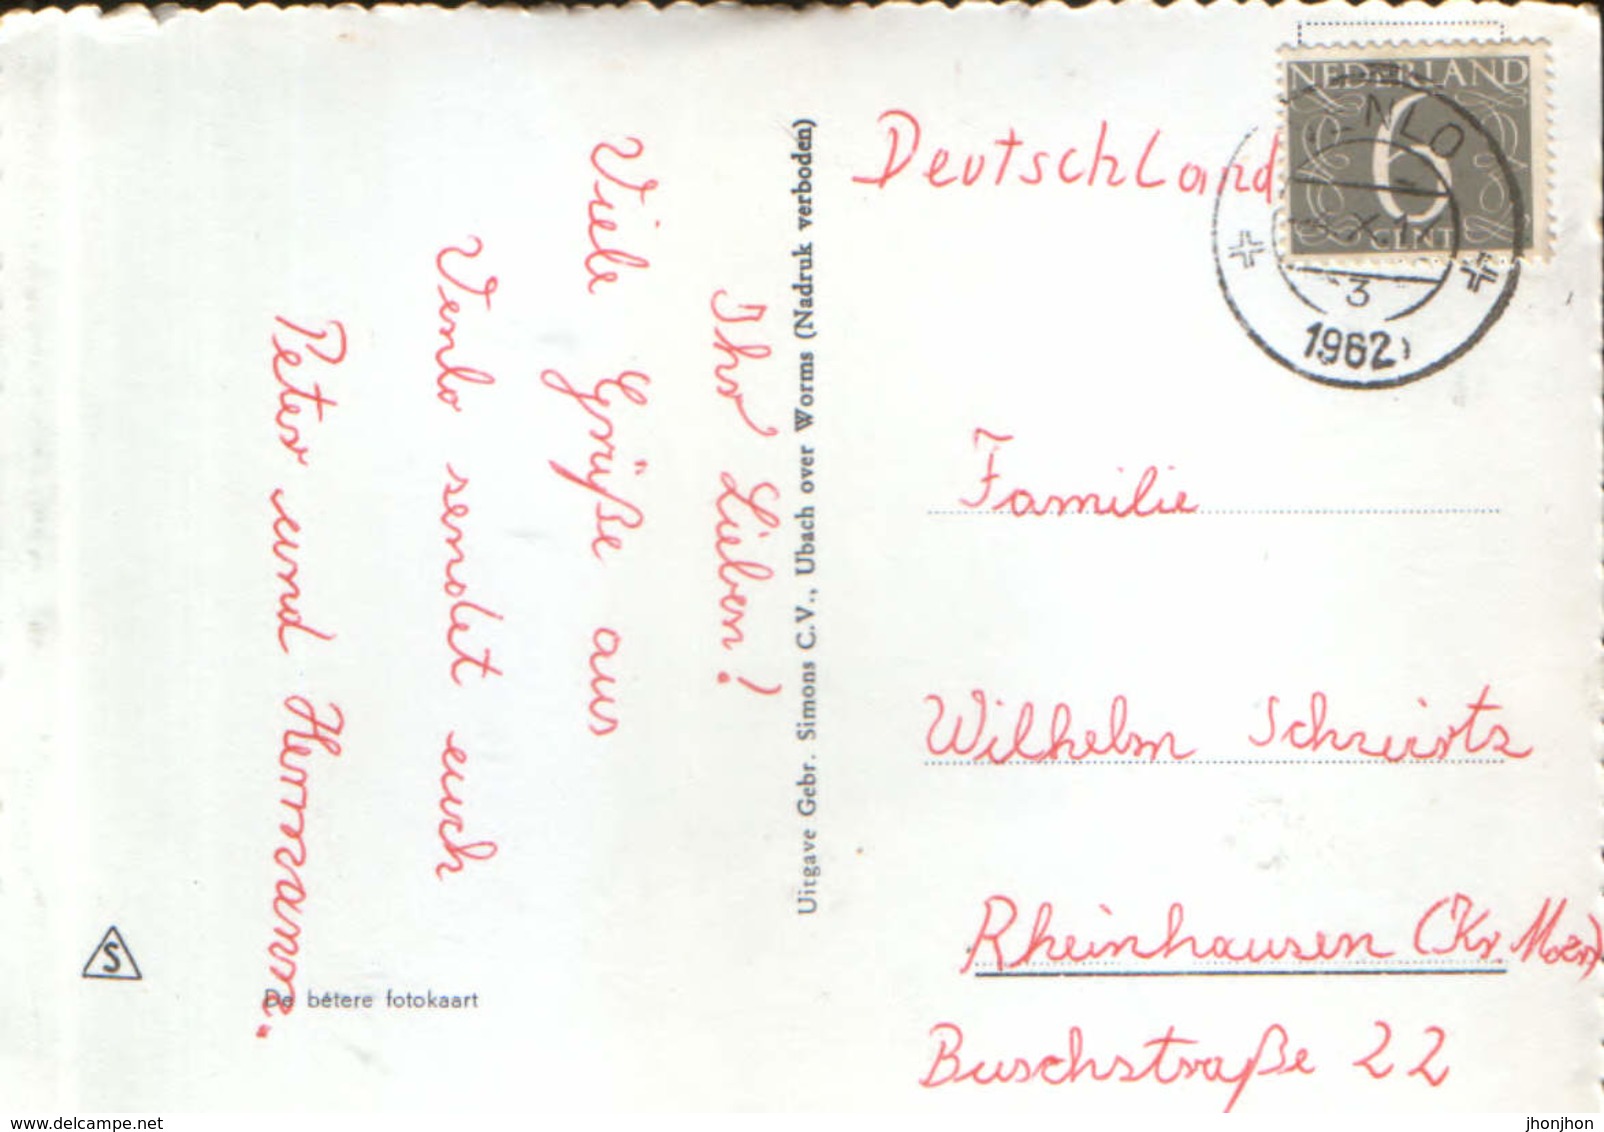 Nederland - Postcard Used 1963 - Venlo - Collage Of Images - 2/scans - Venlo